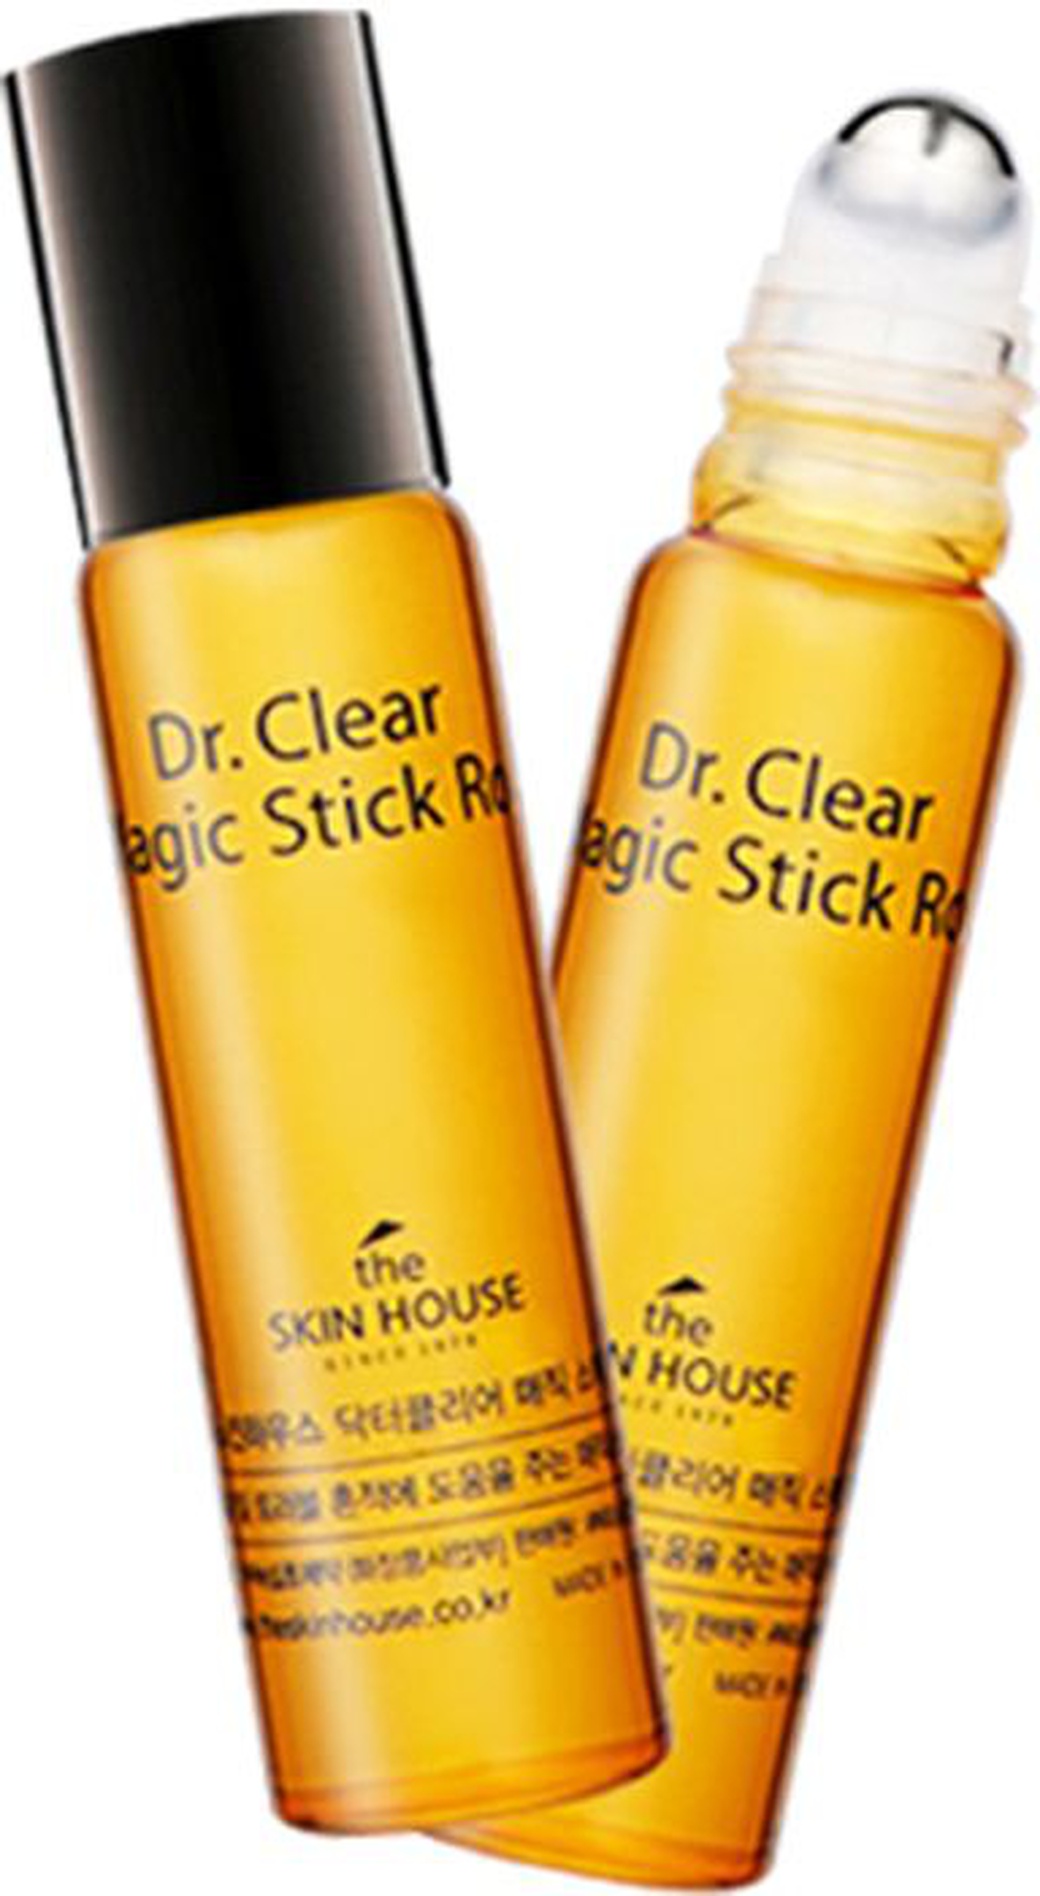 The Skin House Средство точечечного применения против воспалений с роликовым аппликатором "Dr. Clear" фото